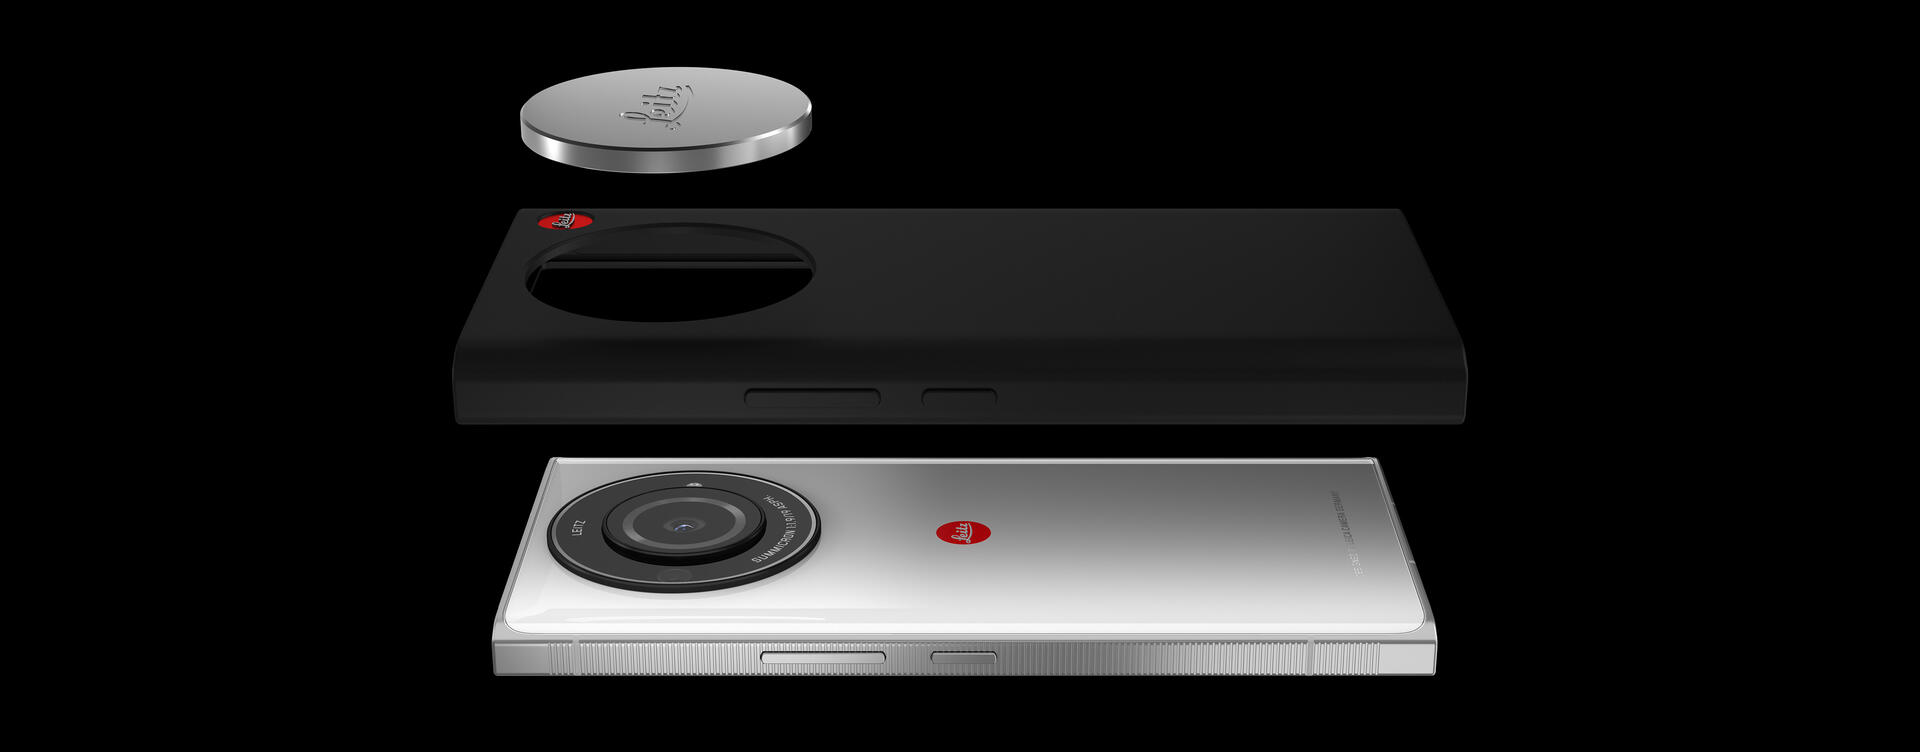 Leica представила друге покоління фірмового смартфона Leitz Phone